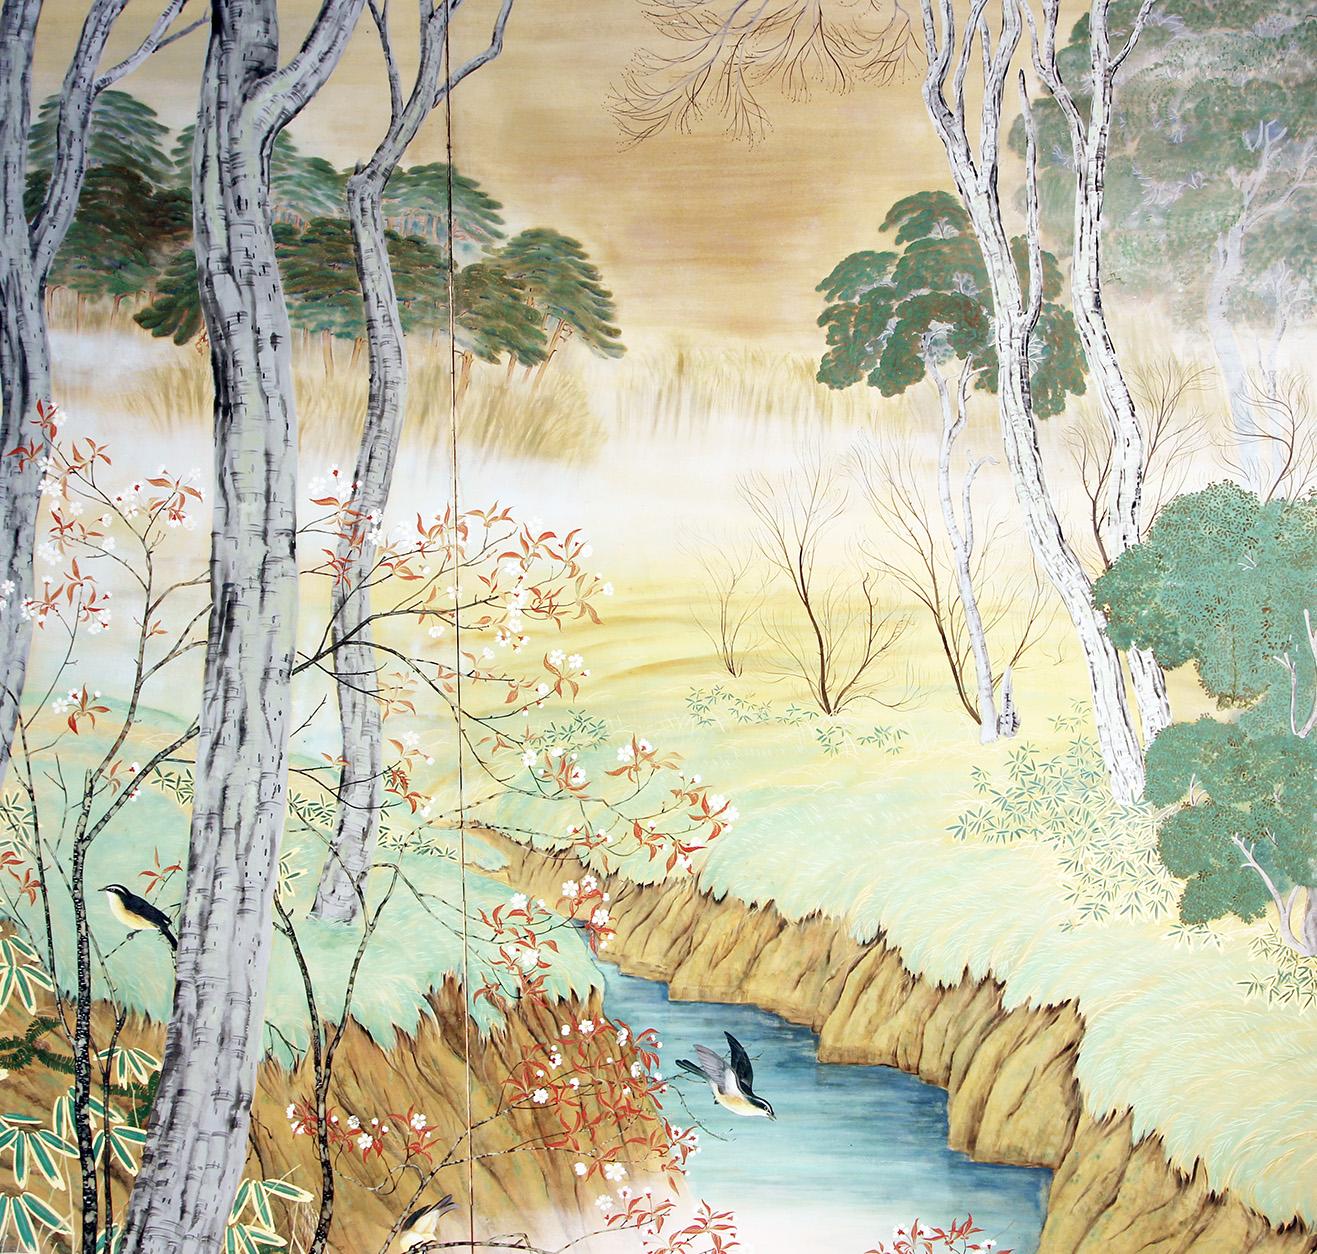 Paravento Giapponese a due pannelli della metà dello scorso secolo è raffigurante un realistico paesaggio con alberi di betulle, fiori ed uccelli nei pressi di un ruscello.
Colori tenui, ma decisi, una pennellata gradevole e sicura.
Facilmente